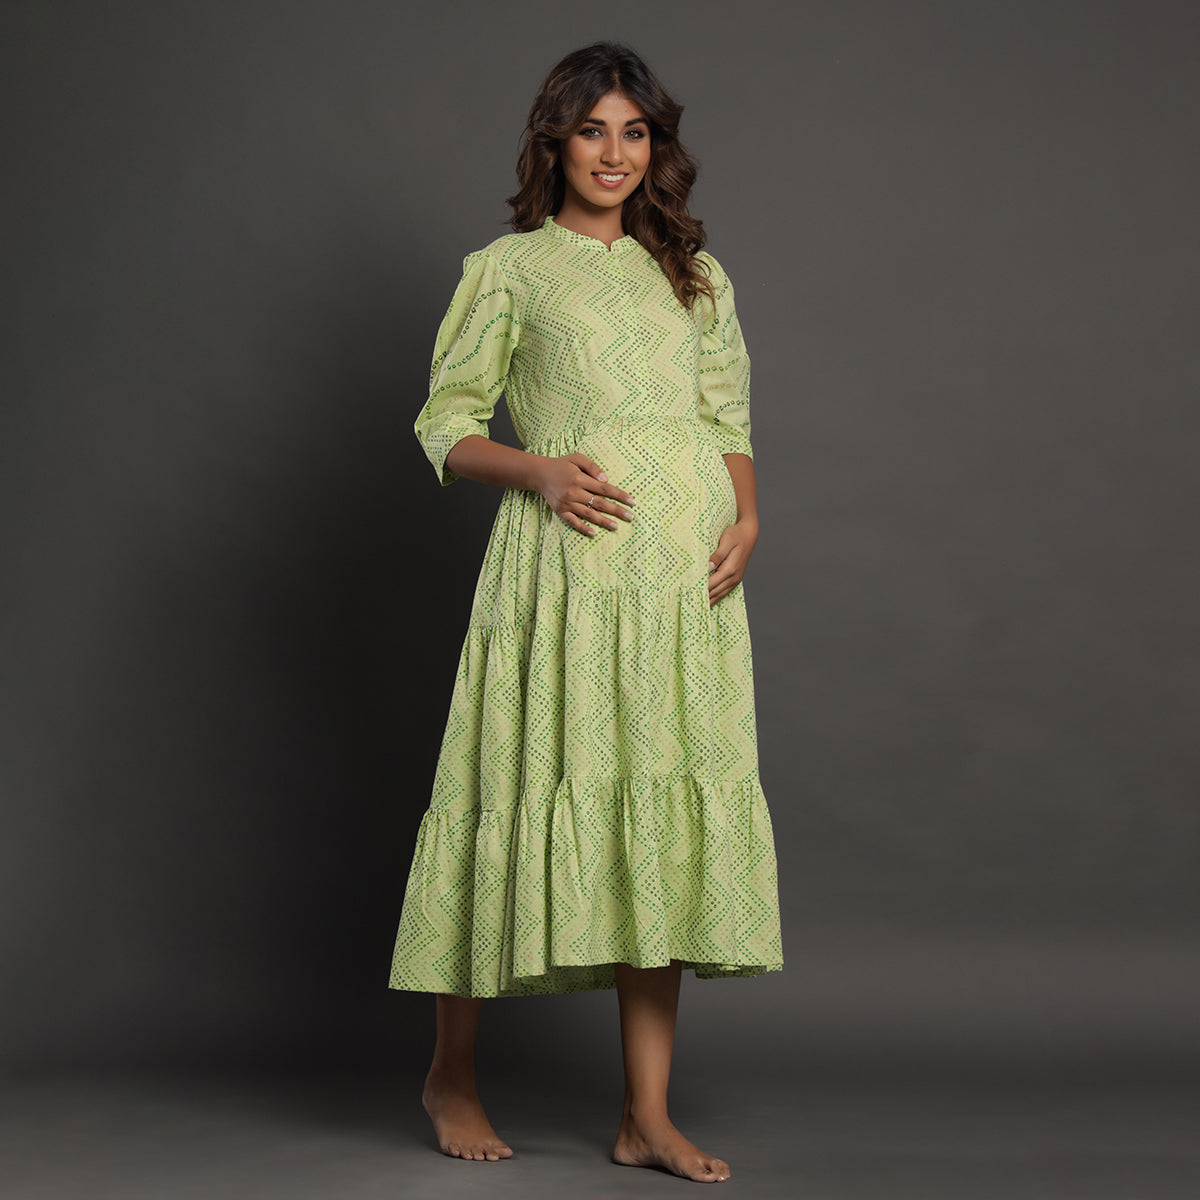 Bandhej on Green Maternity Dress Jisora Jaipur